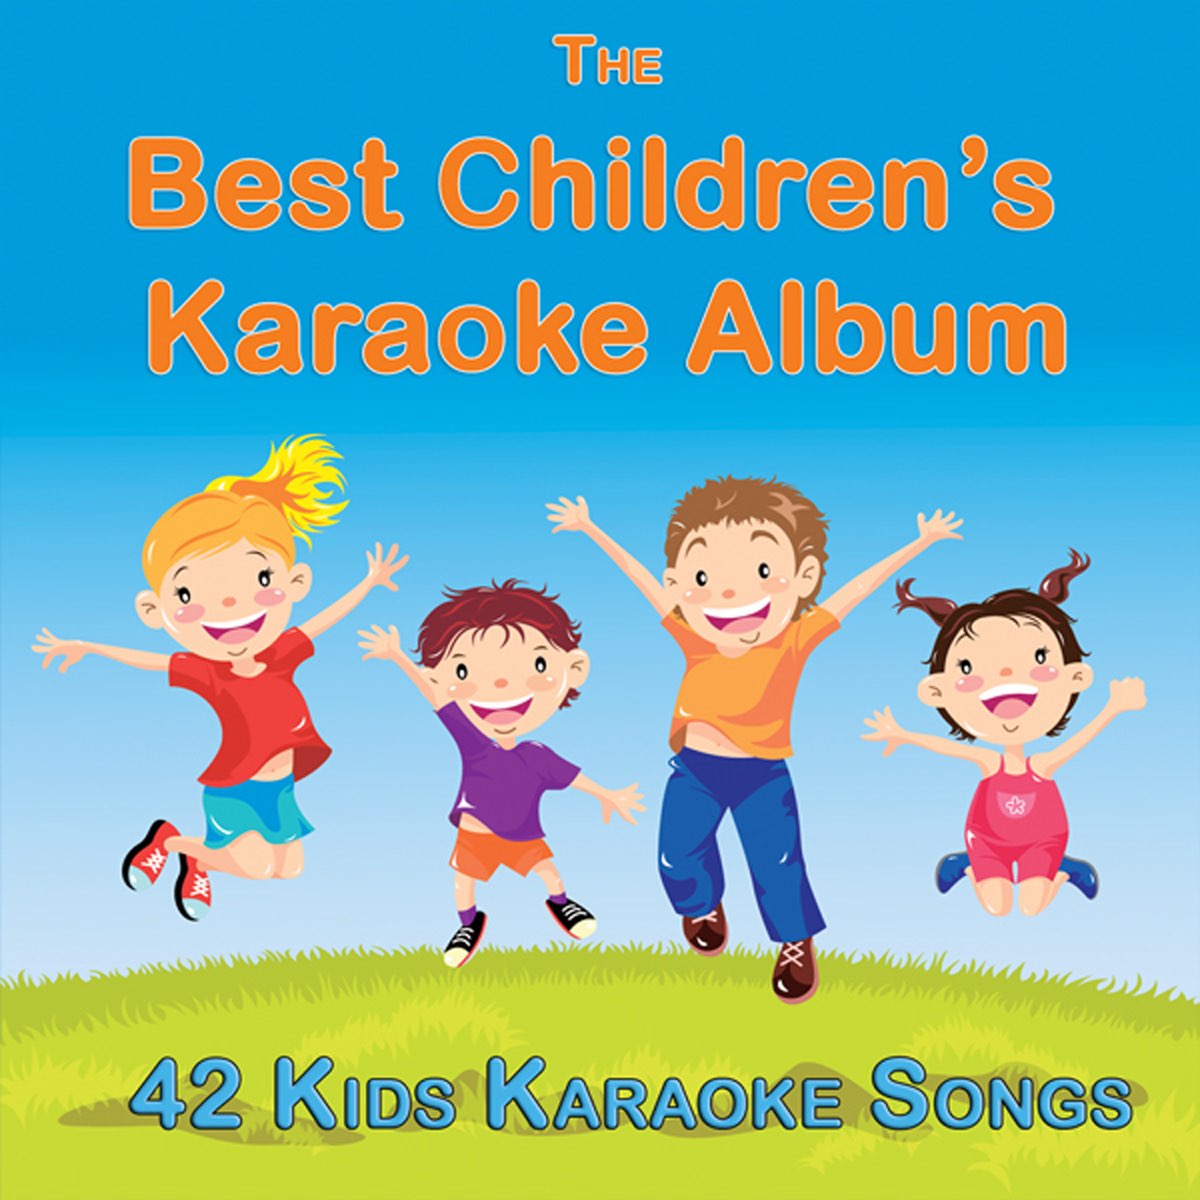 The Best Childrens Karaoke Album (42 Kids Karaoke Songs) - Album by Stewart  Peters - Apple Music